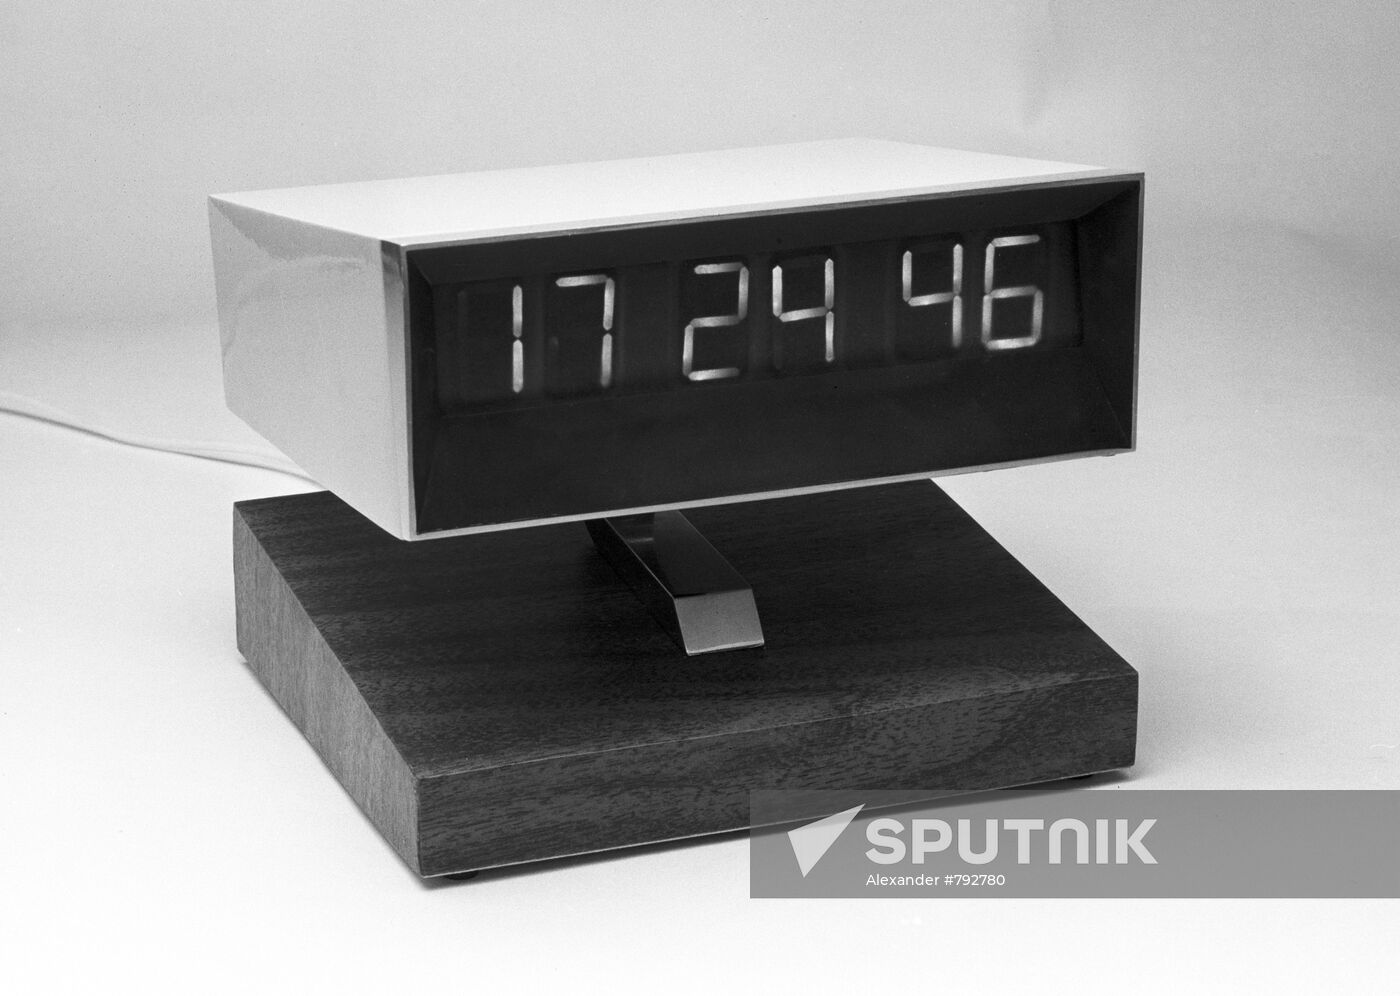 Prima quarts digital clock